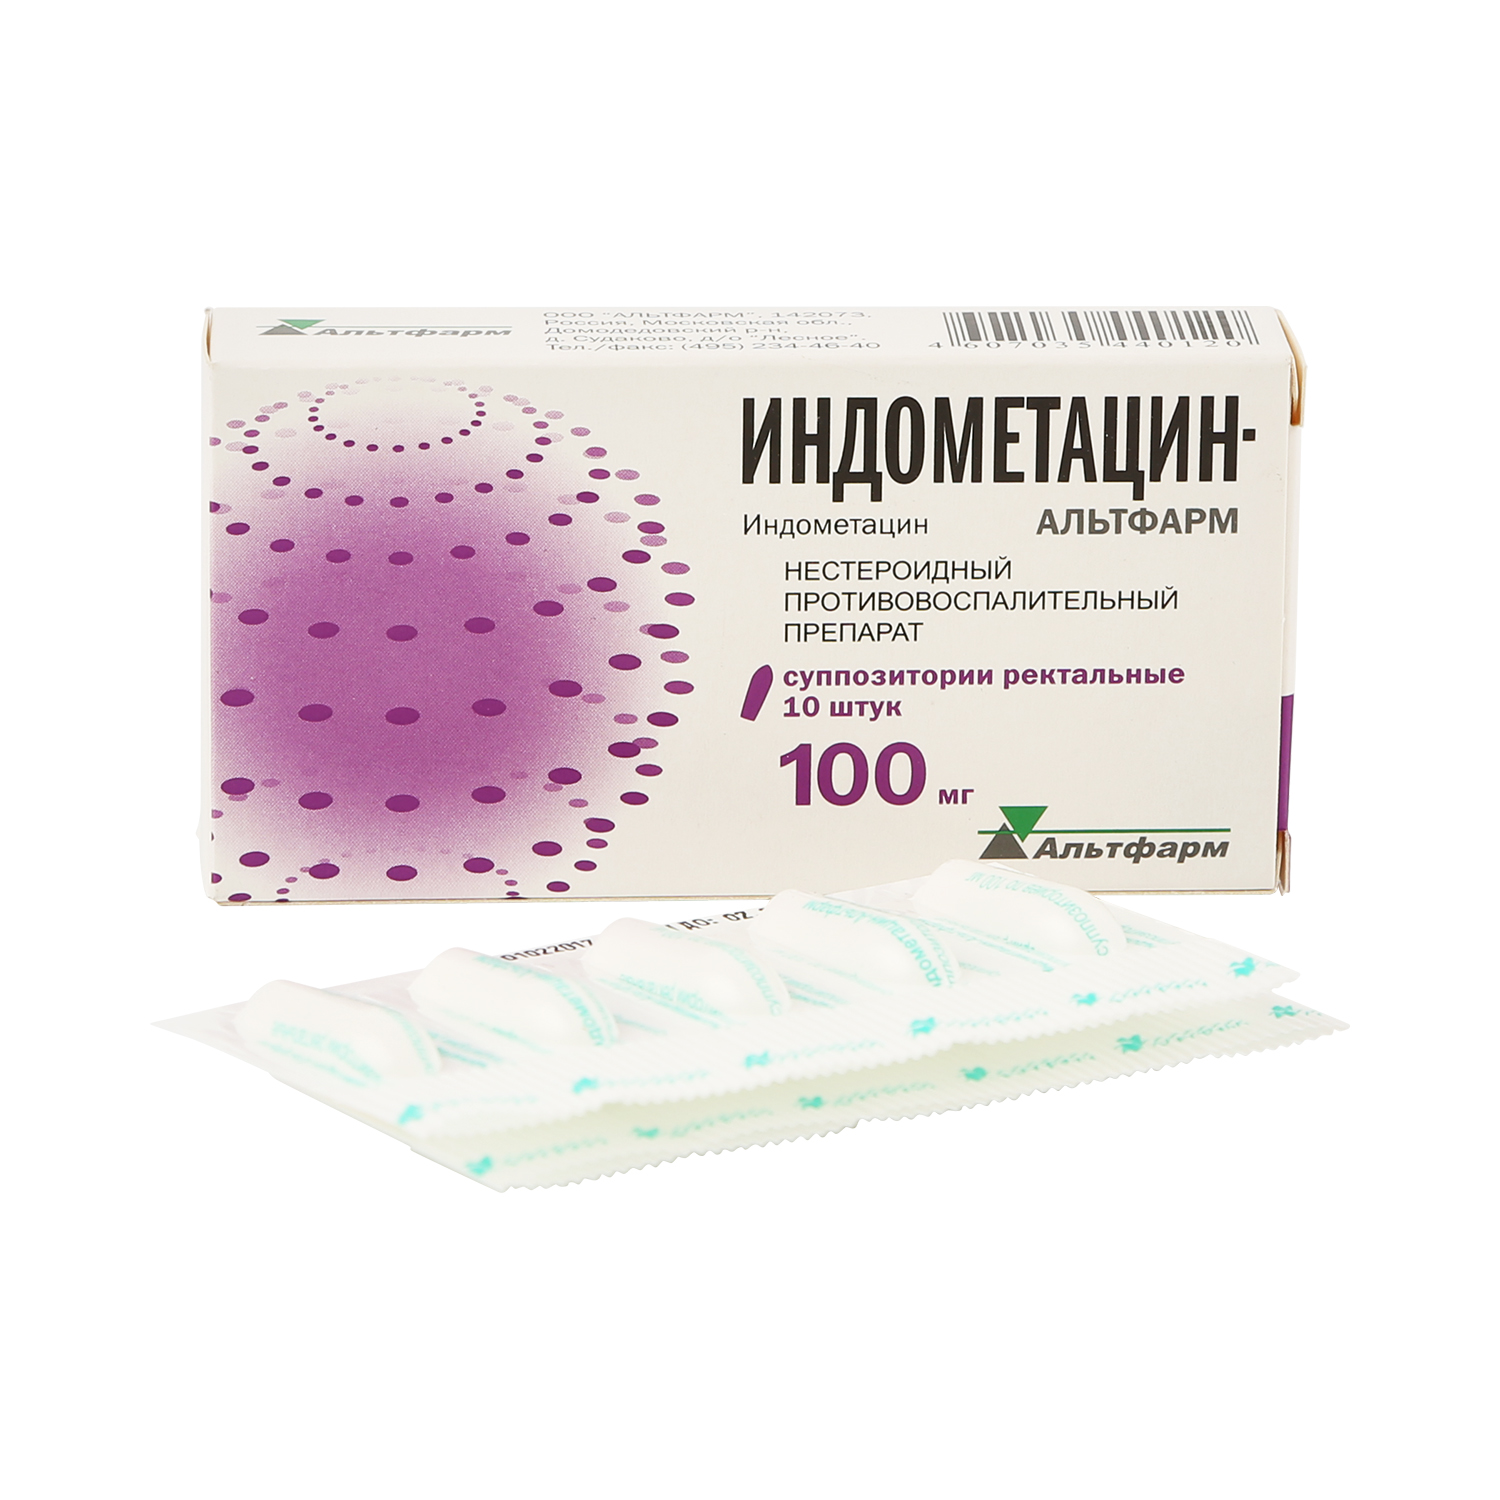 Индометацин супп.рект. 100мг №10